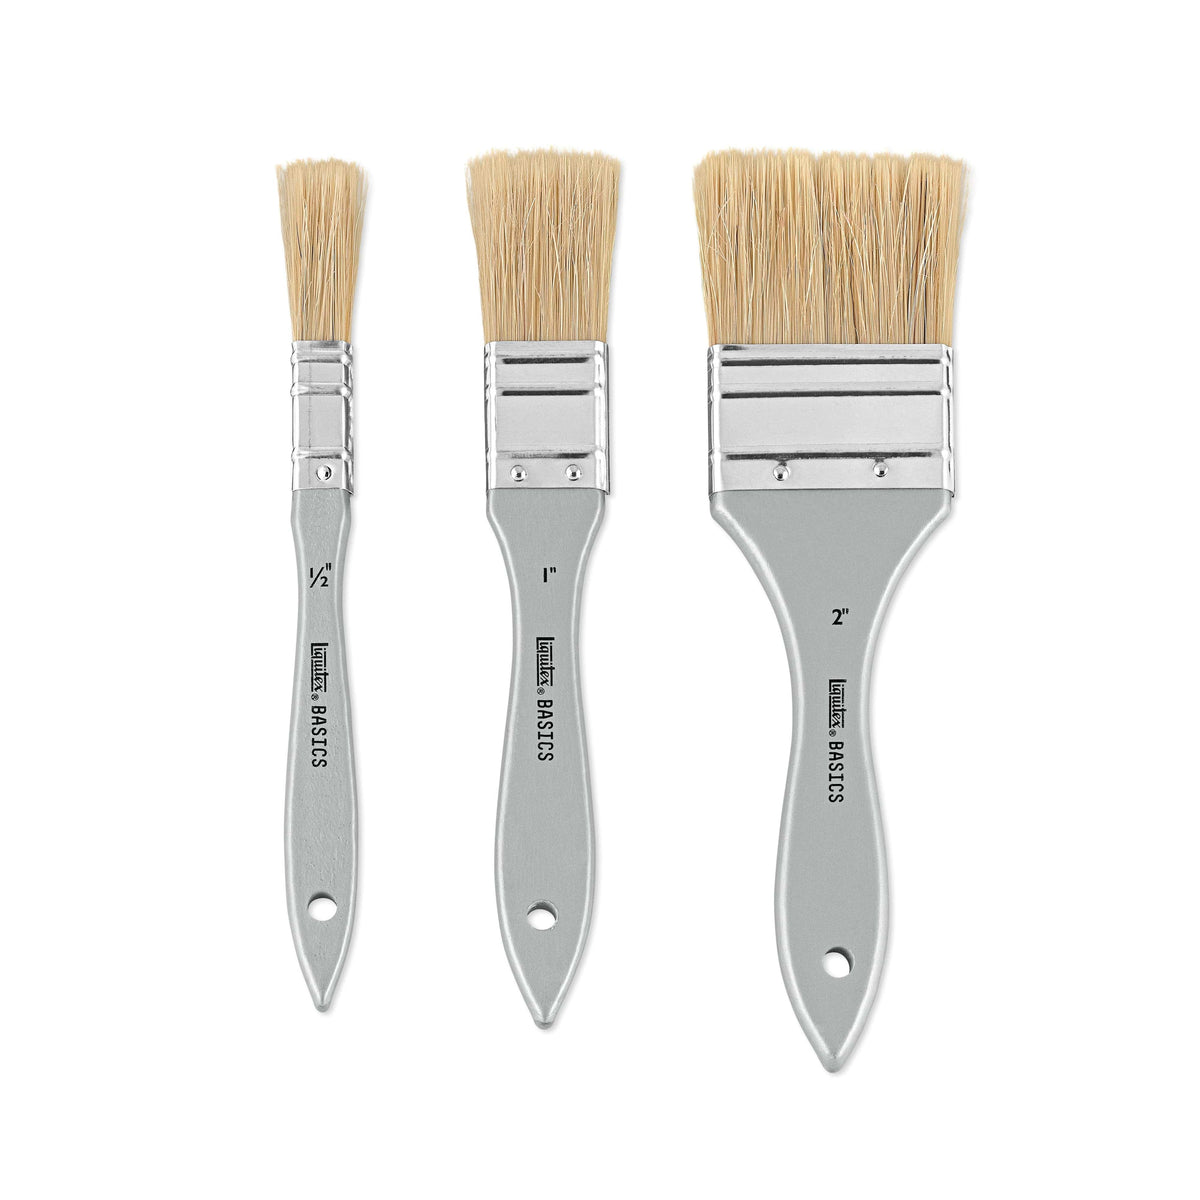 BASICS Natural Hair Brush Set, 3-Brush Set